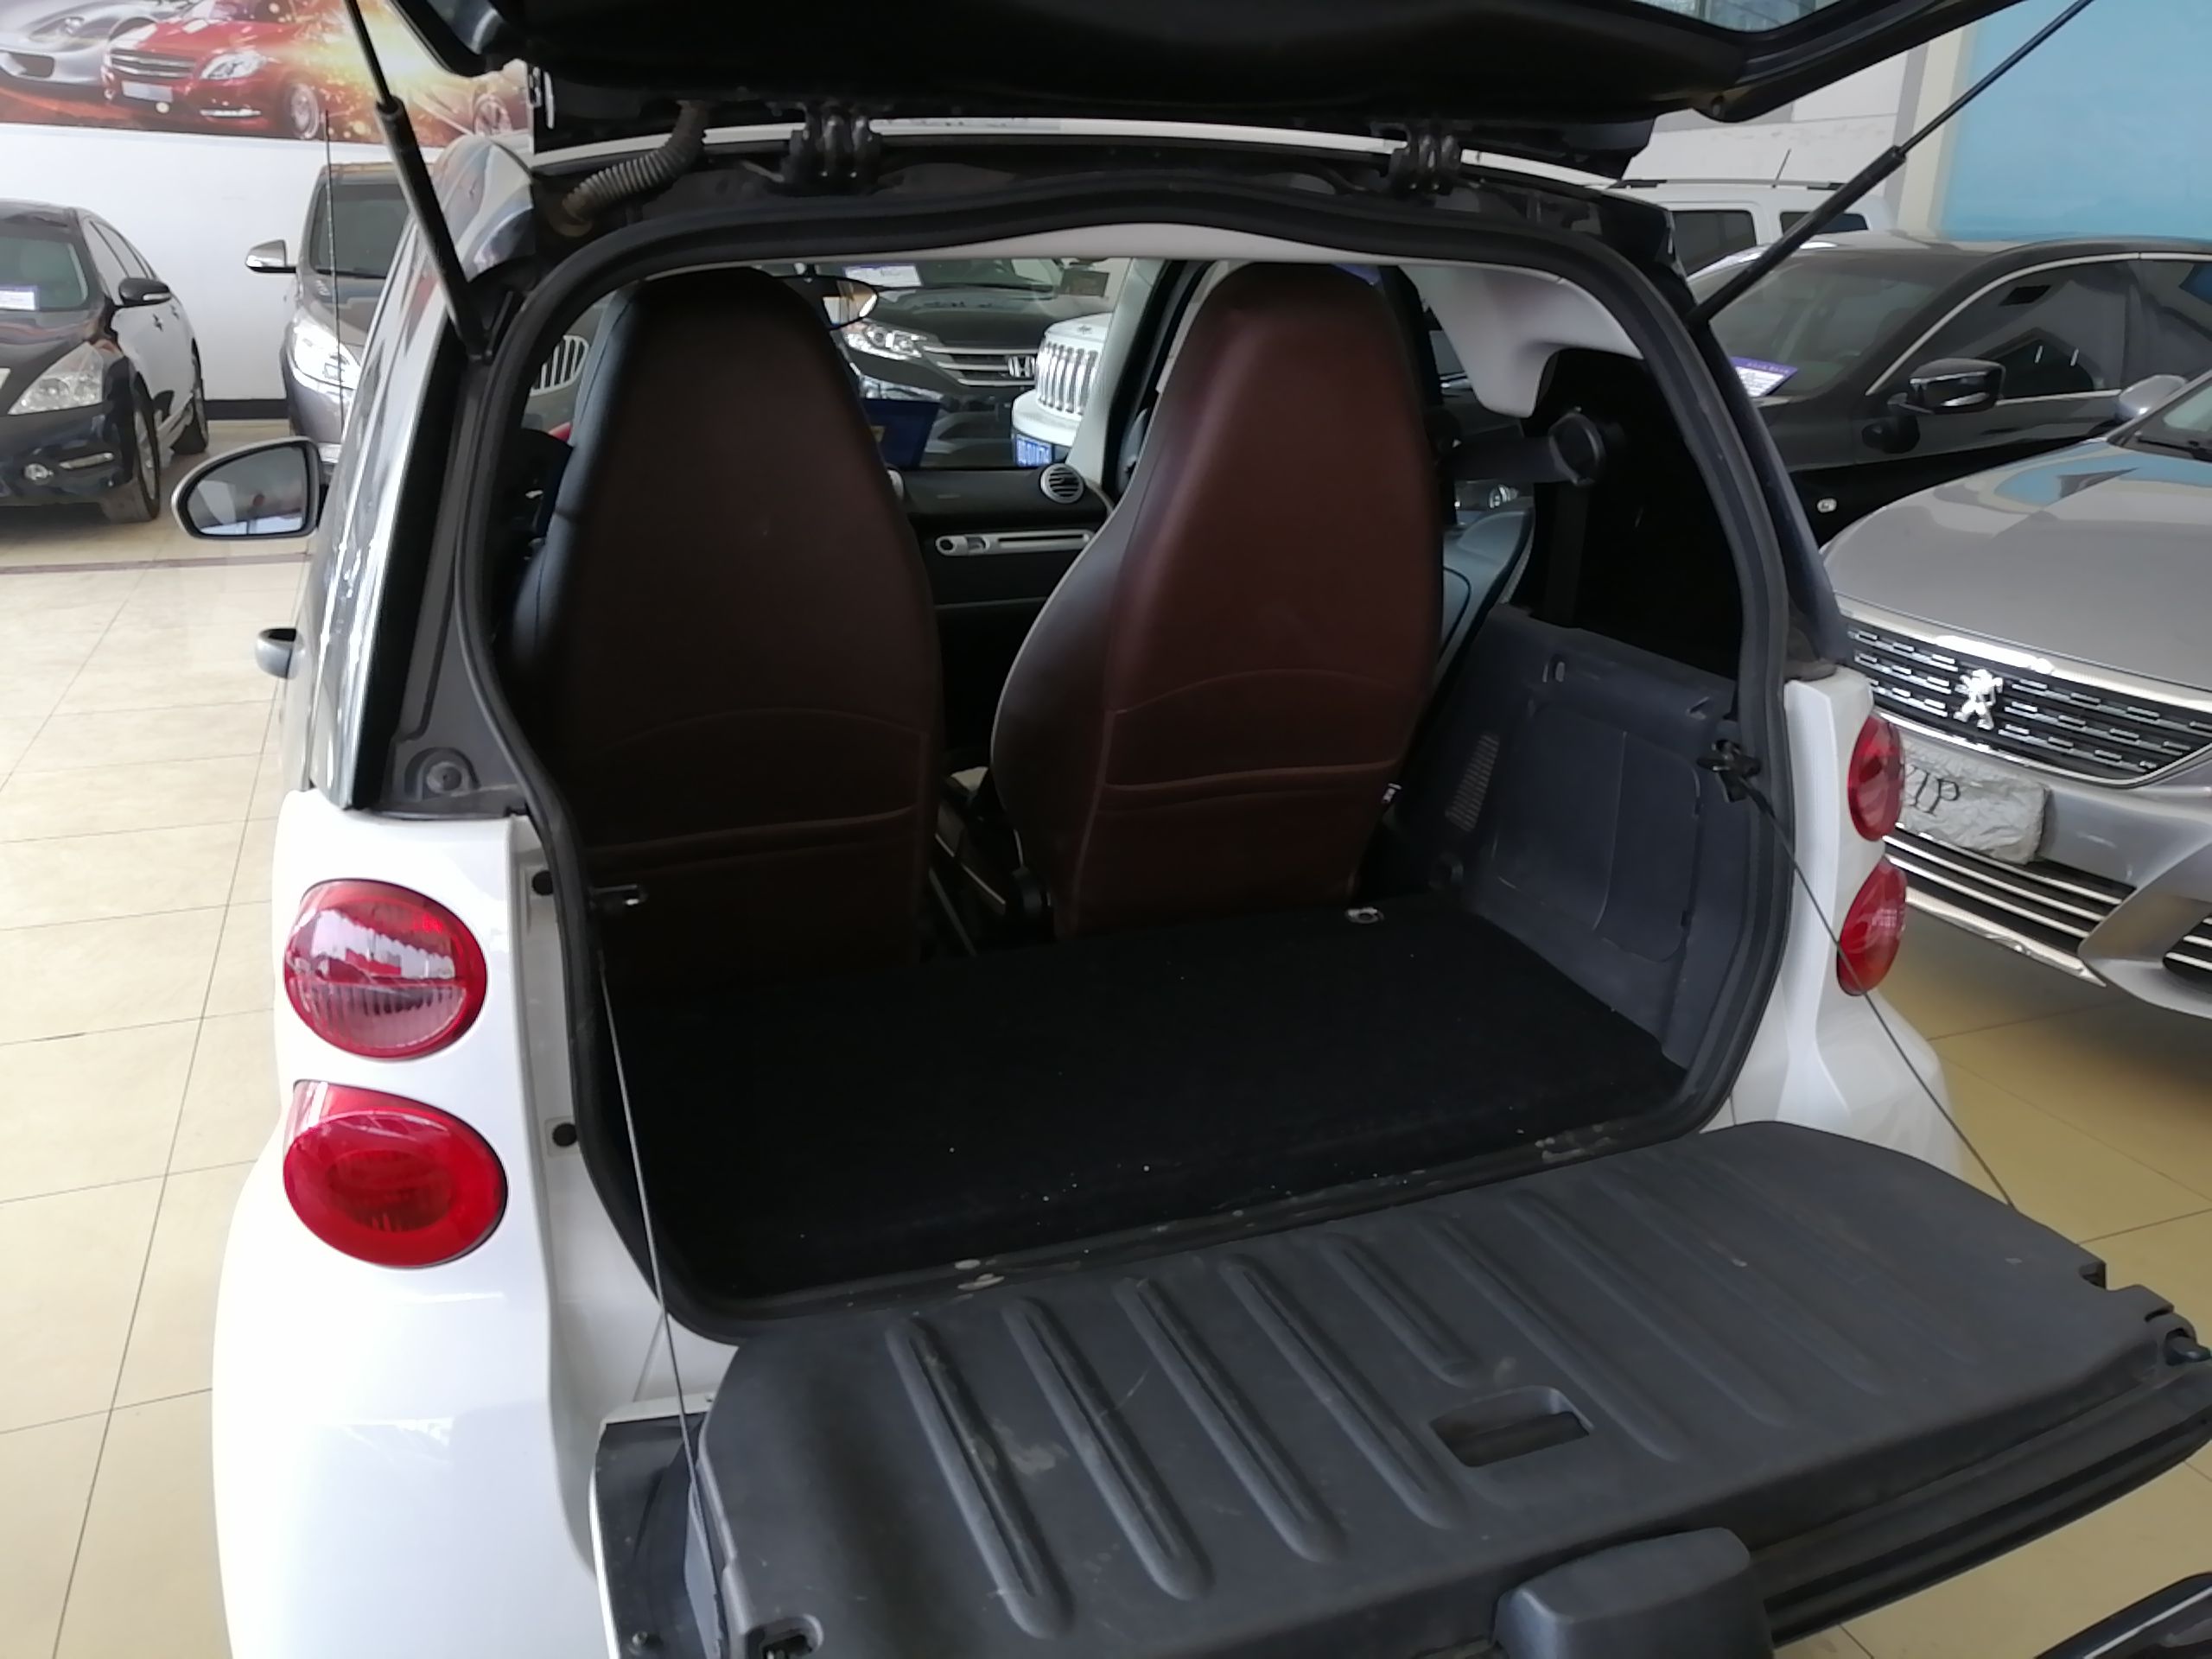 SmartForTwo [进口] 2012款 1.0L 自动 汽油 舒适版 